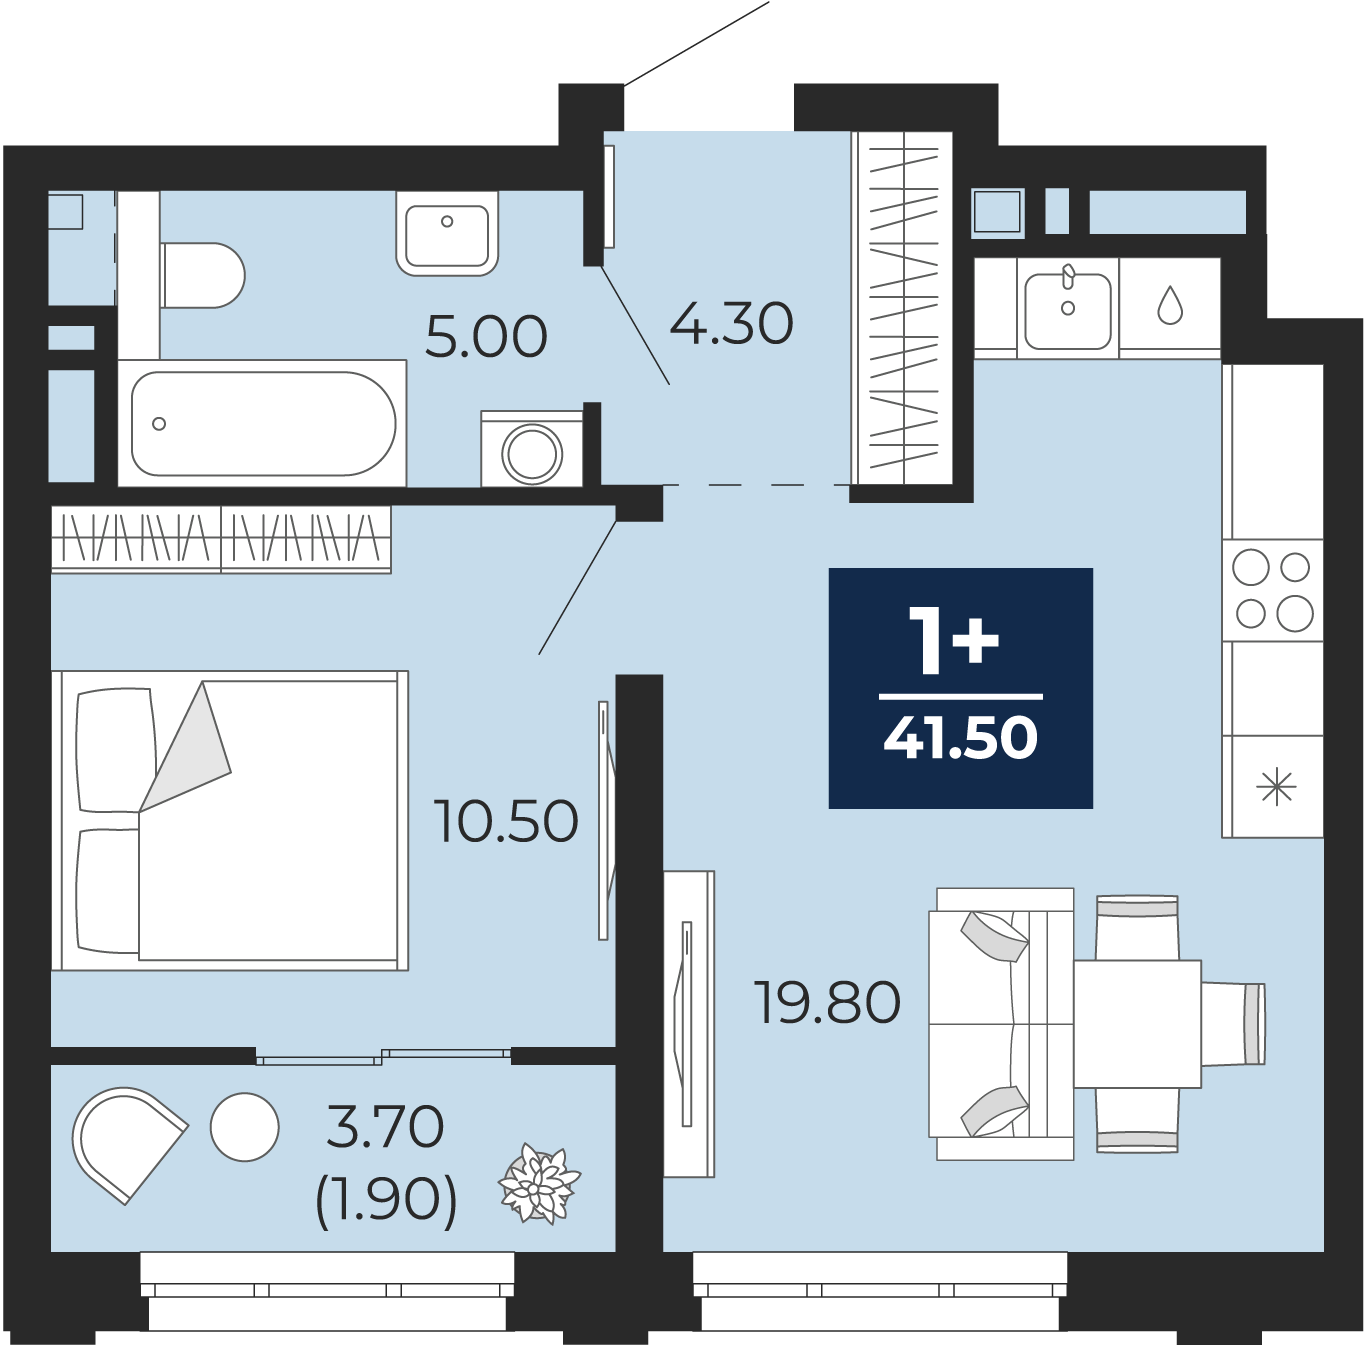 Квартира № 261, 1-комнатная, 41.5 кв. м, 3 этаж